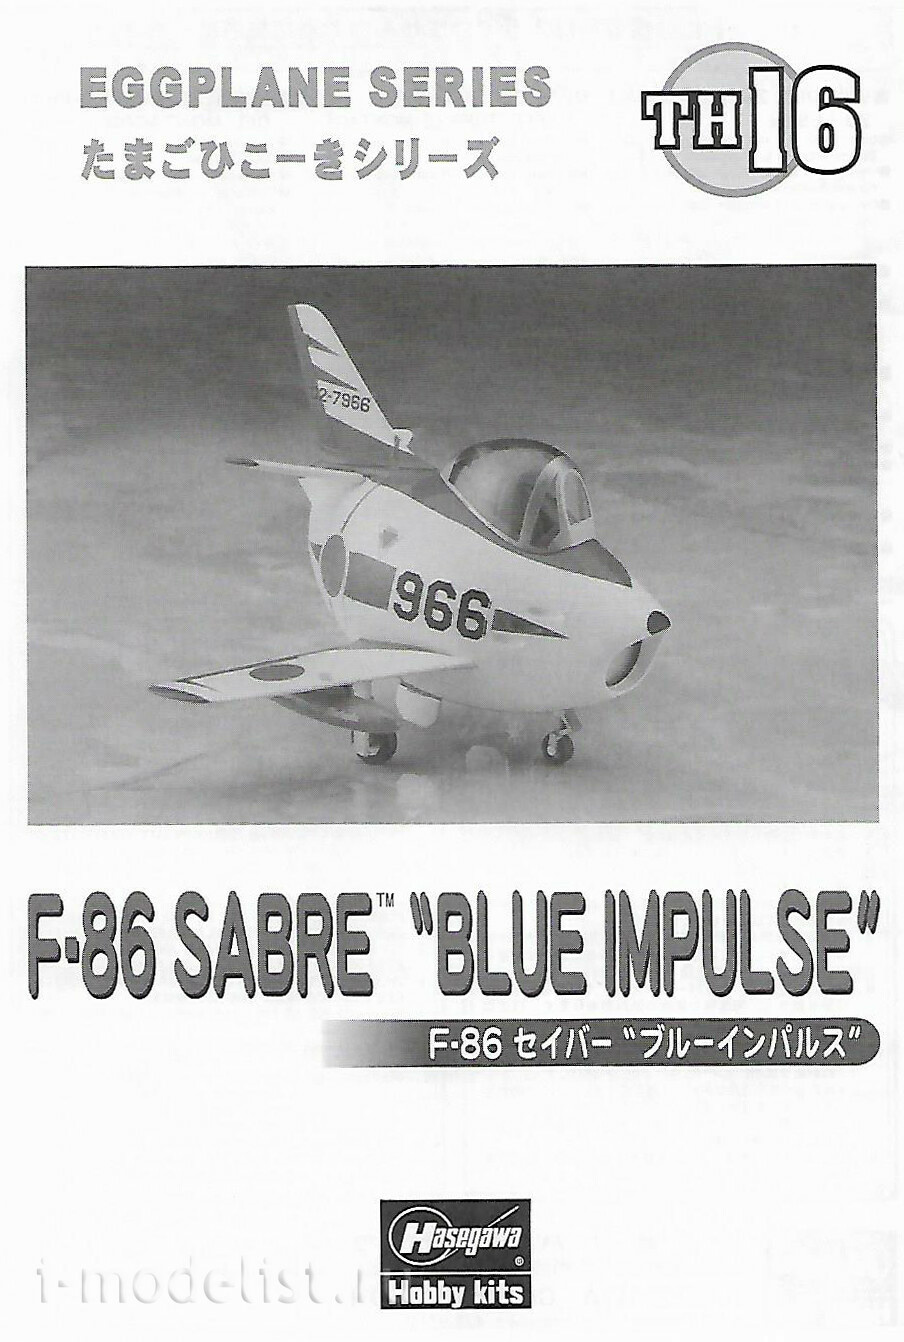 60126 Hasegawa Egg Plane F-86 